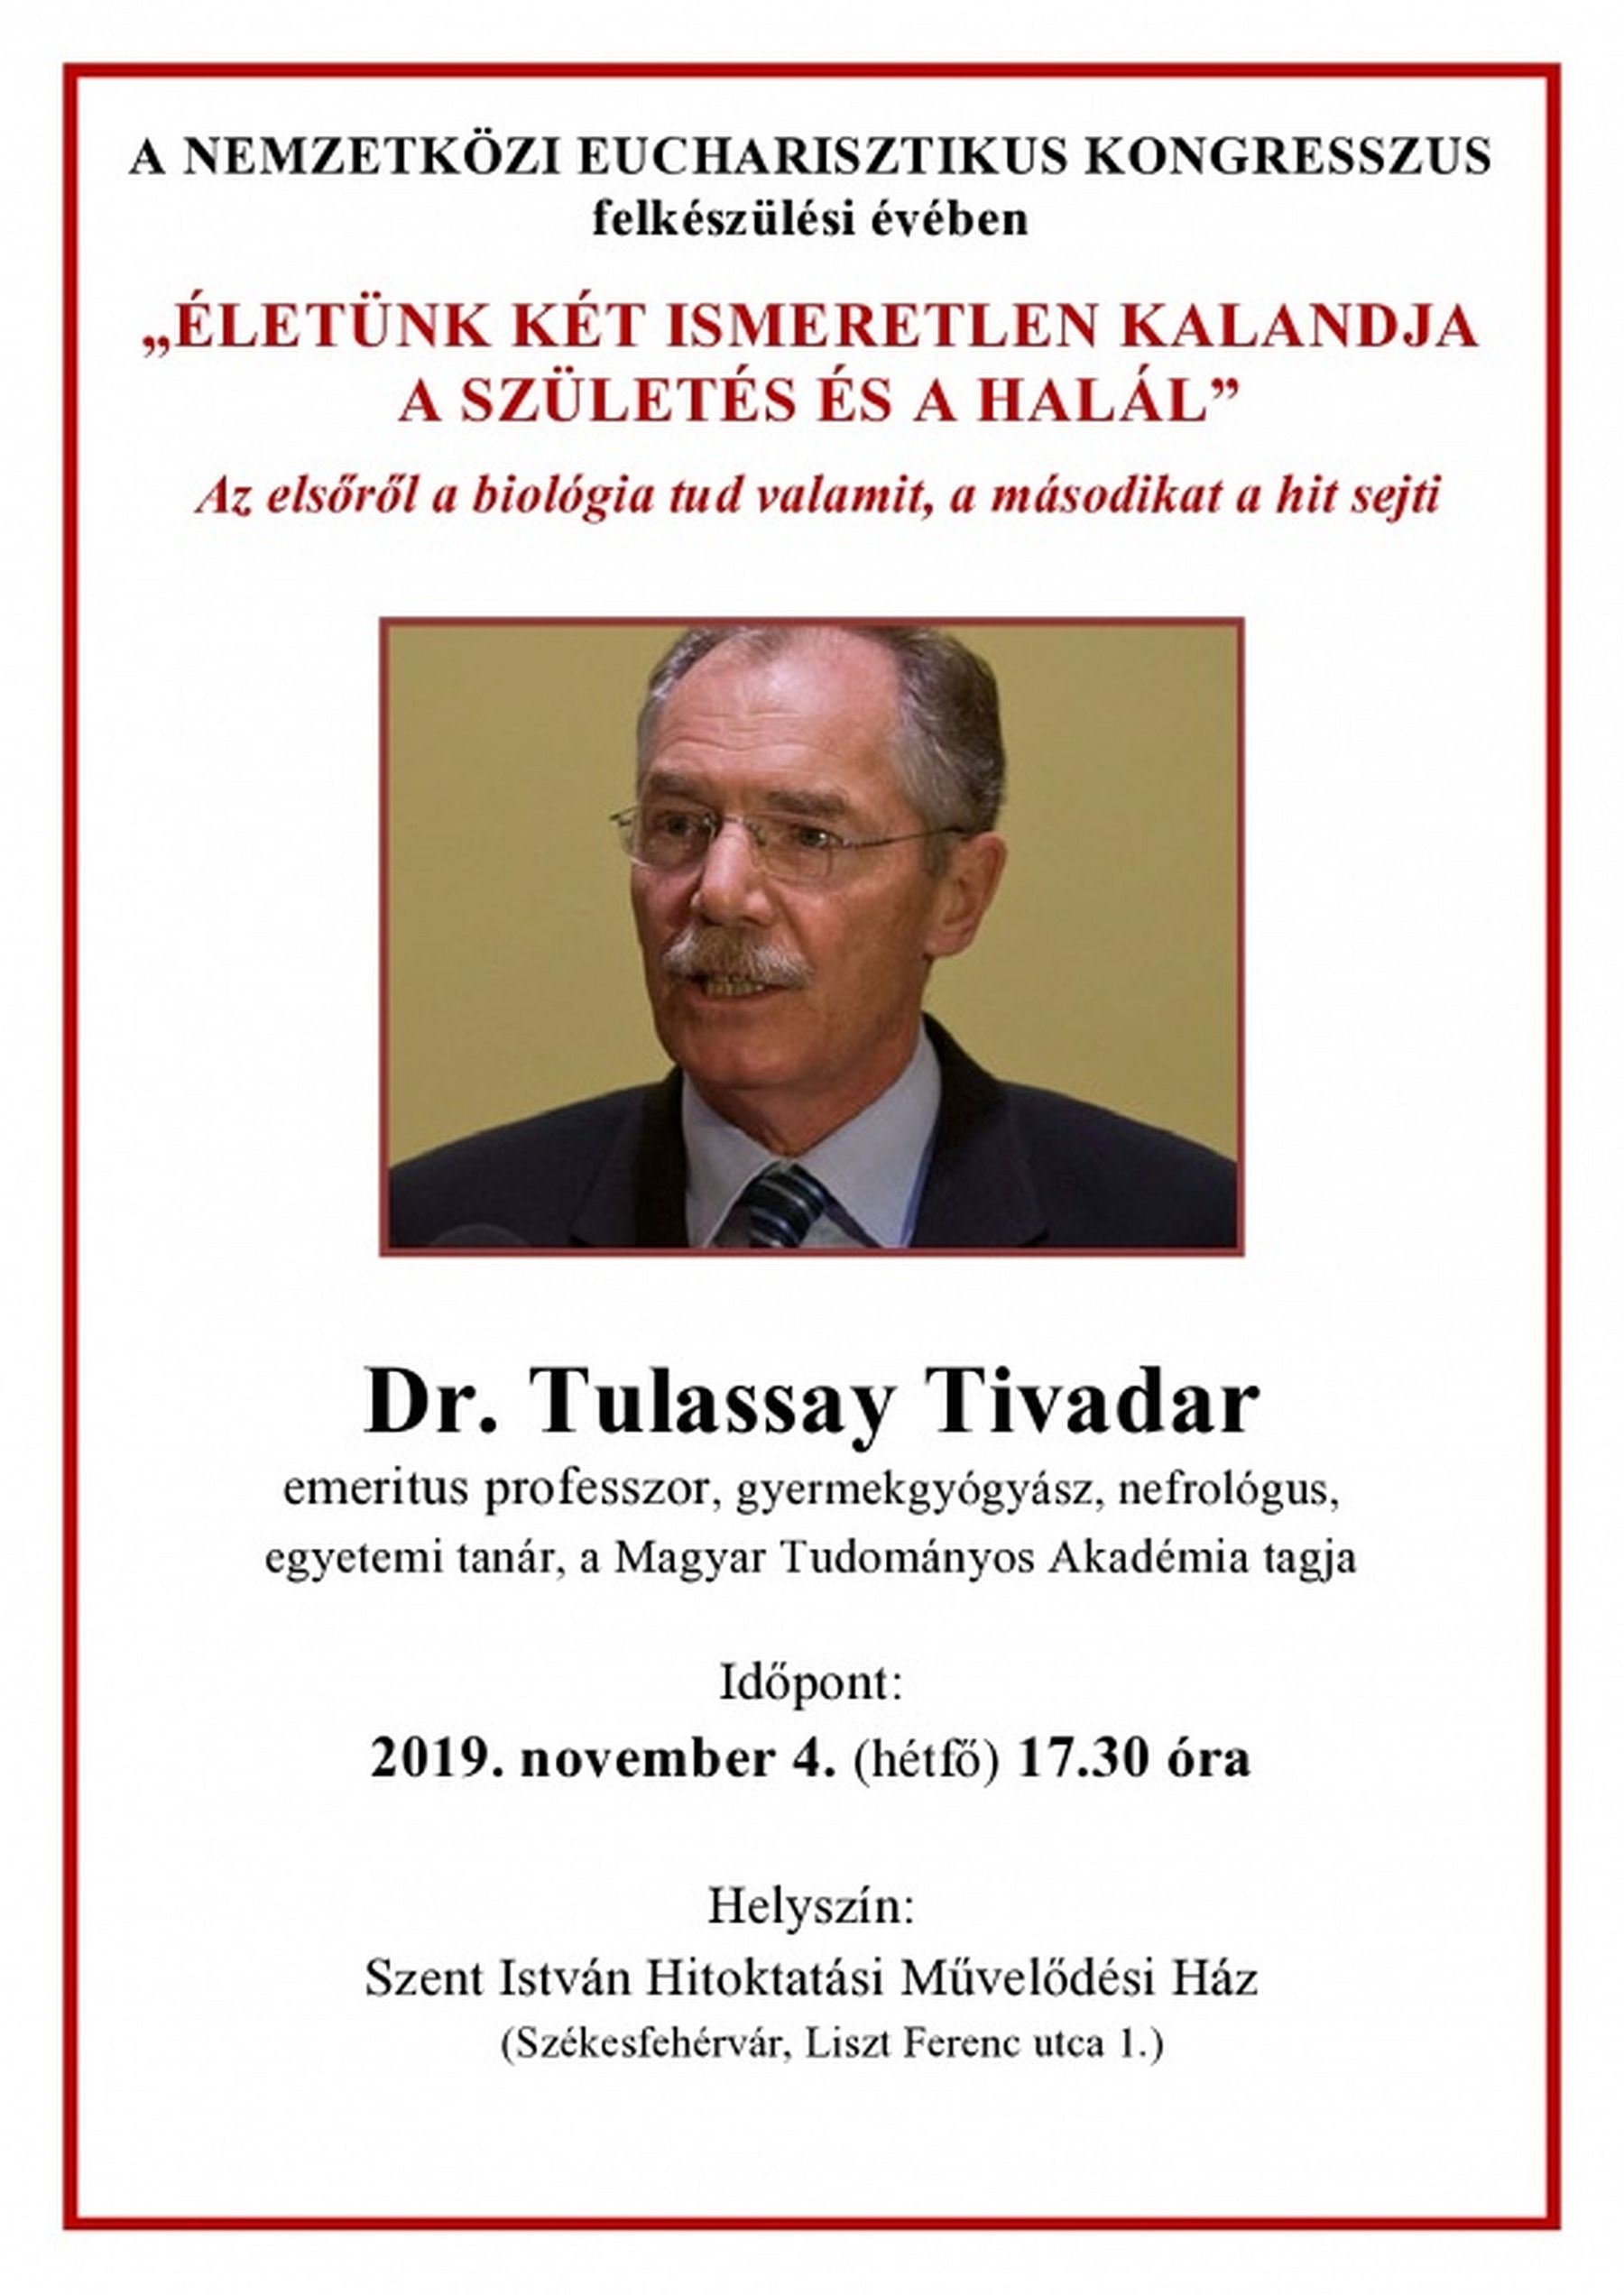 Életünk két ismeretlen kalandja - a születés és a halál - Dr. Tulassay Tivadar előadása